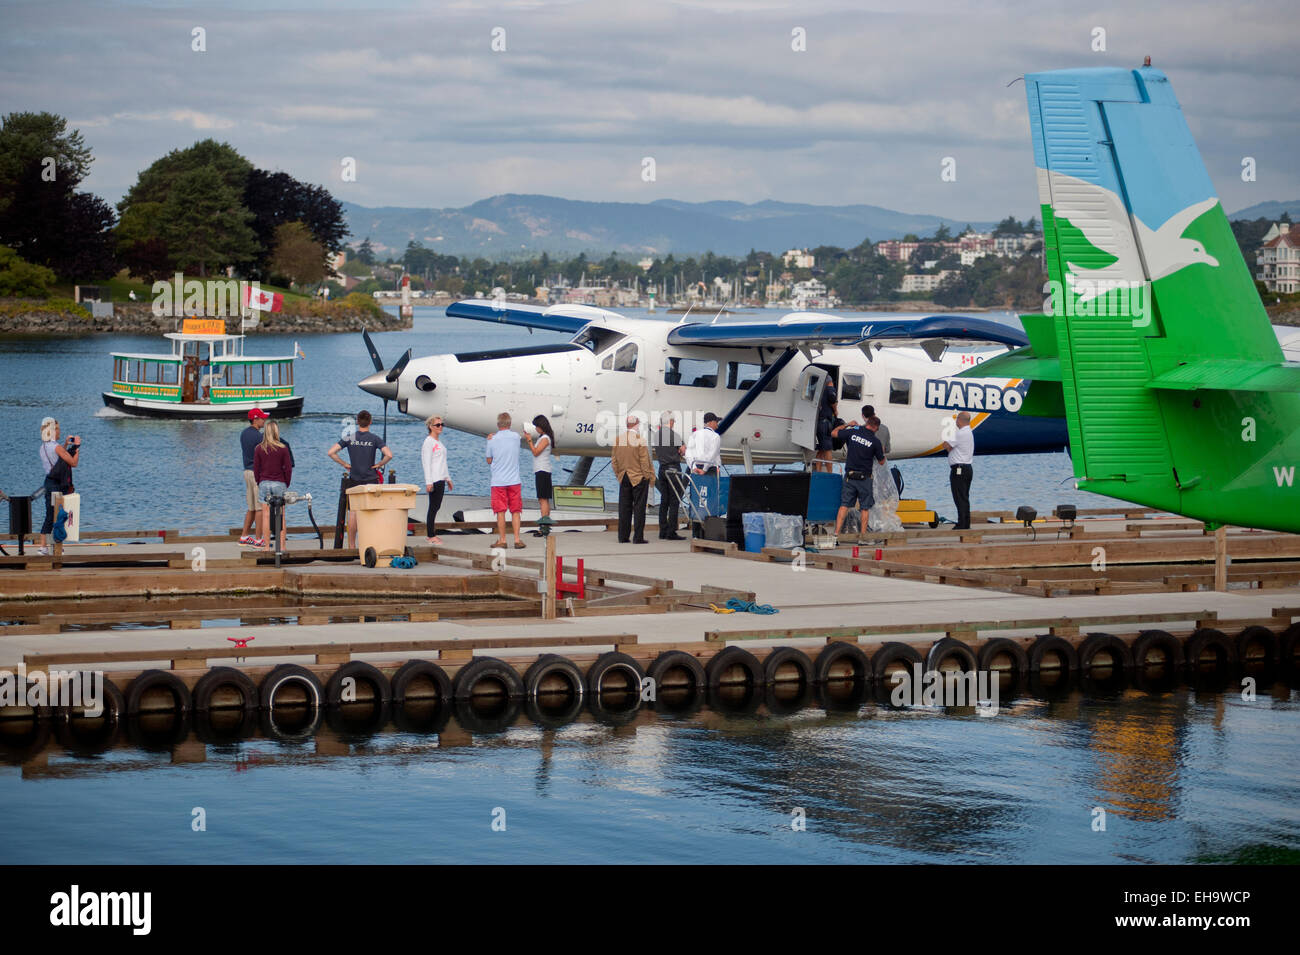 Les passagers d'avion à flotteurs et d'aéronefs à l'intérieur du havre hydravion terminal, Victoria, Colombie-Britannique, Canada. Banque D'Images